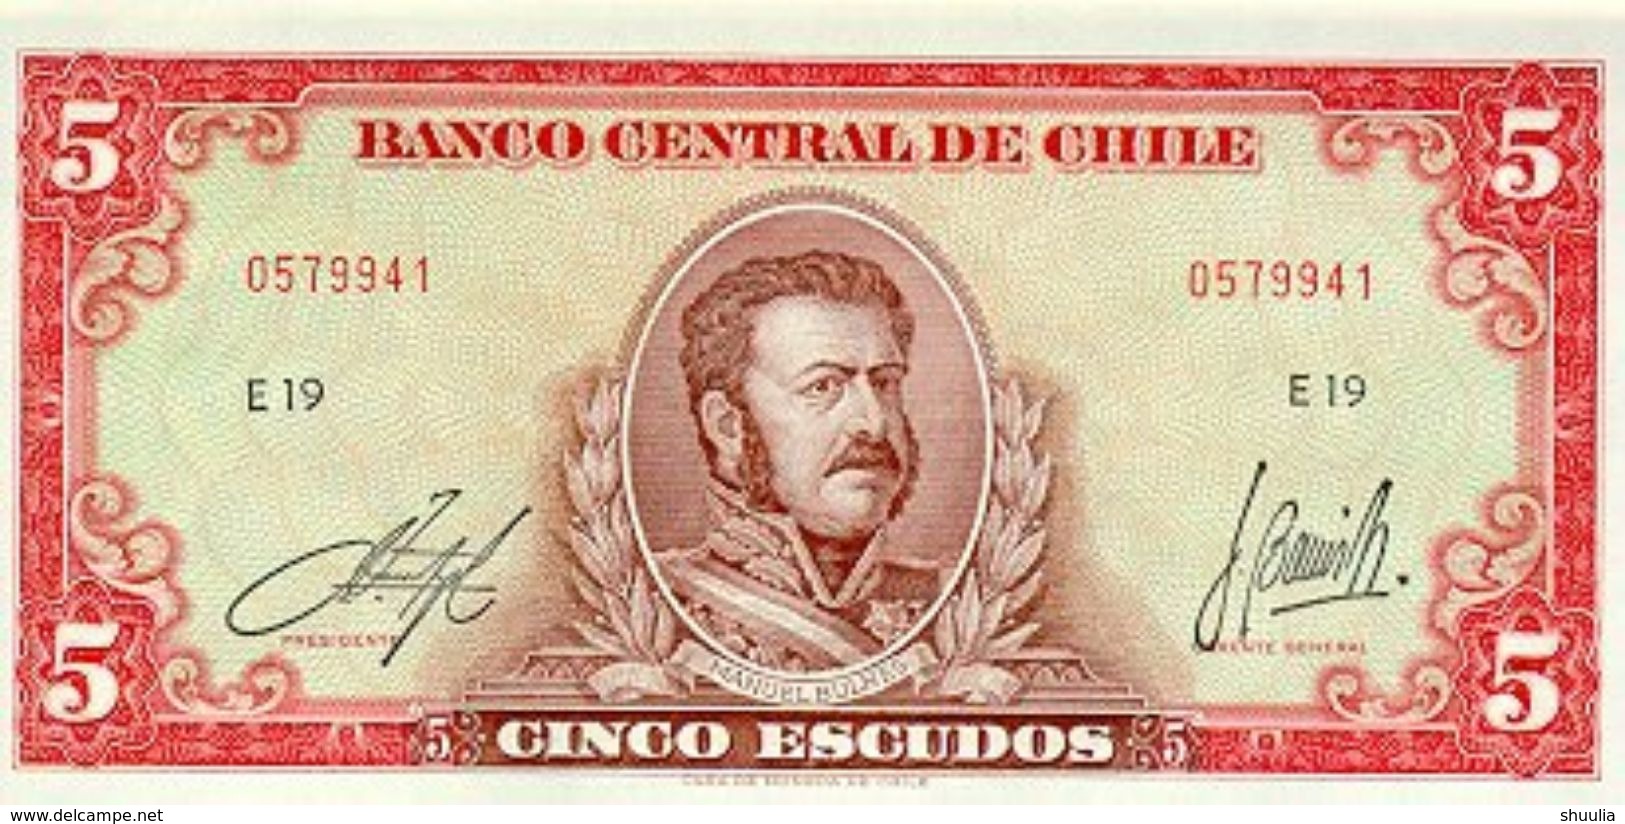 Chile 5 Escudos 1964 Pick 138 UNC - Chile